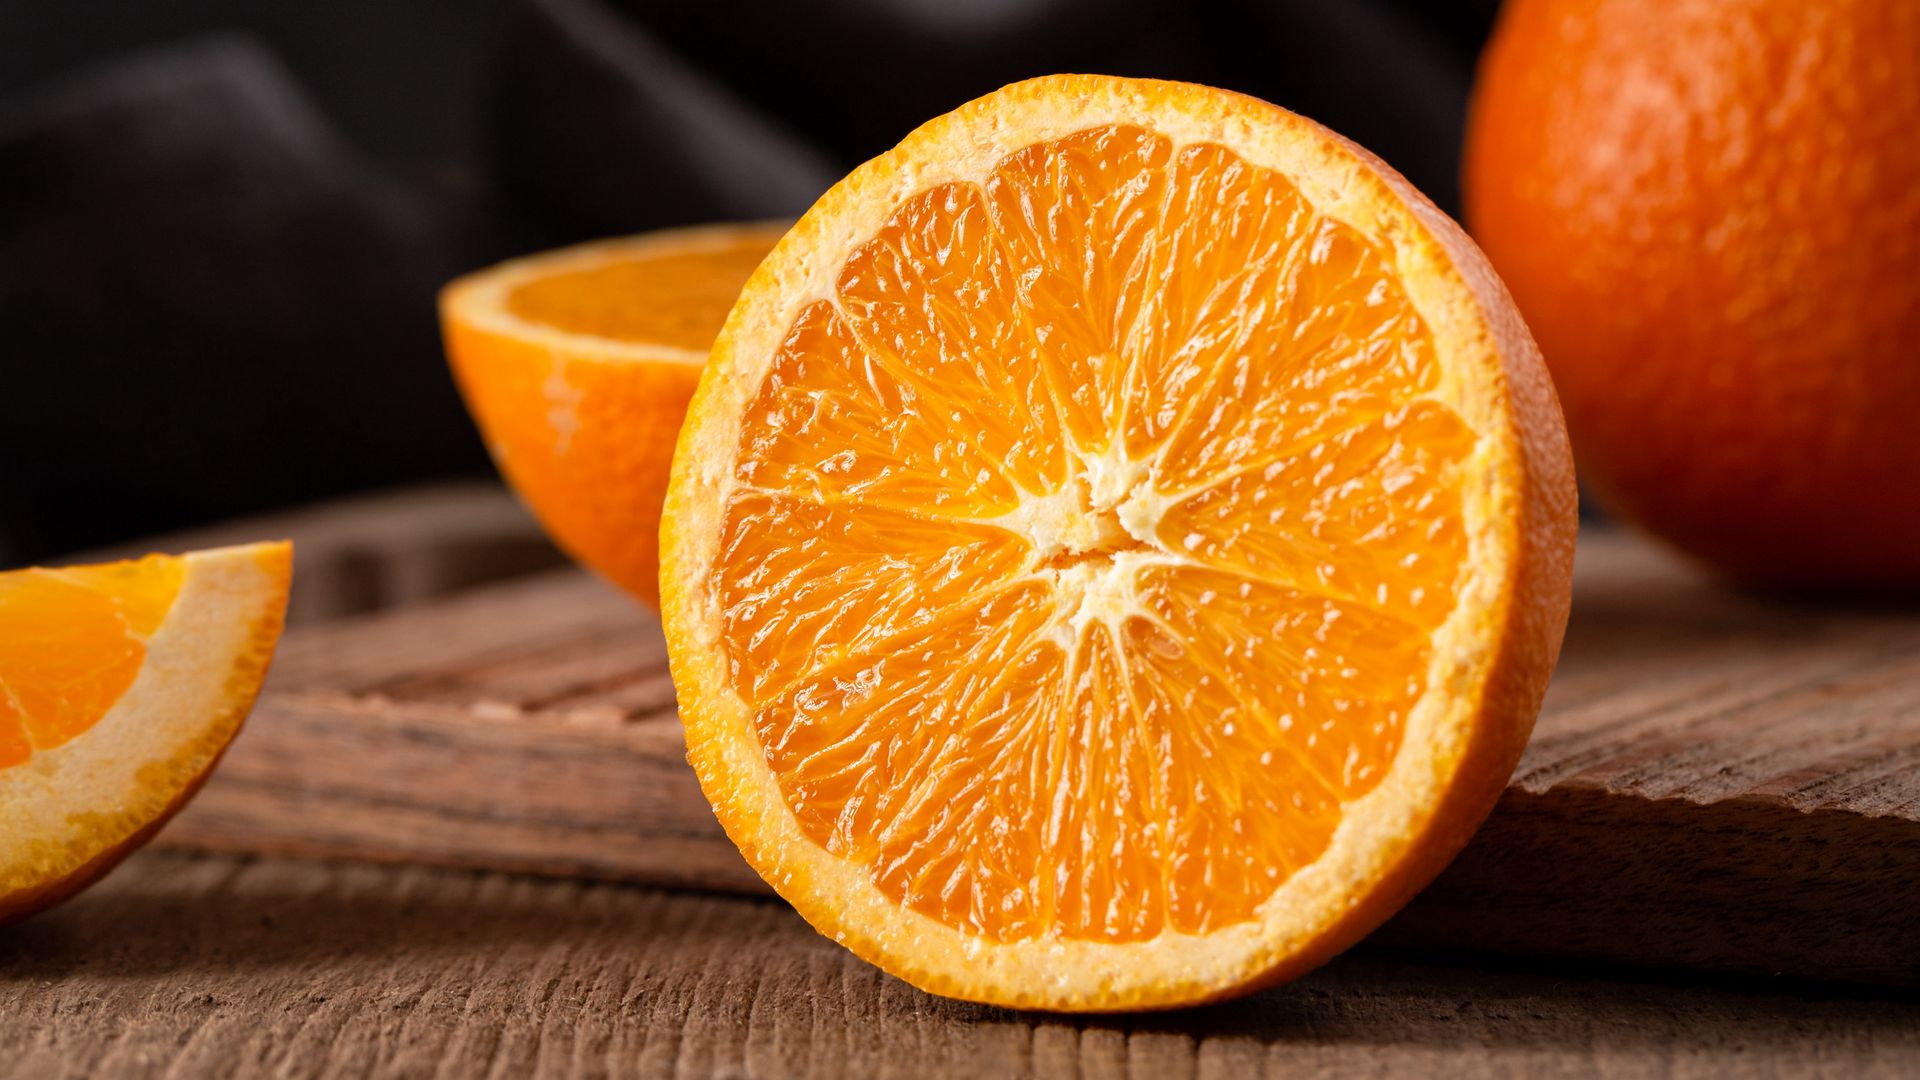 139438 Orange Fruit Wallpaper Images Stock Photos  Vectors  Shutterstock